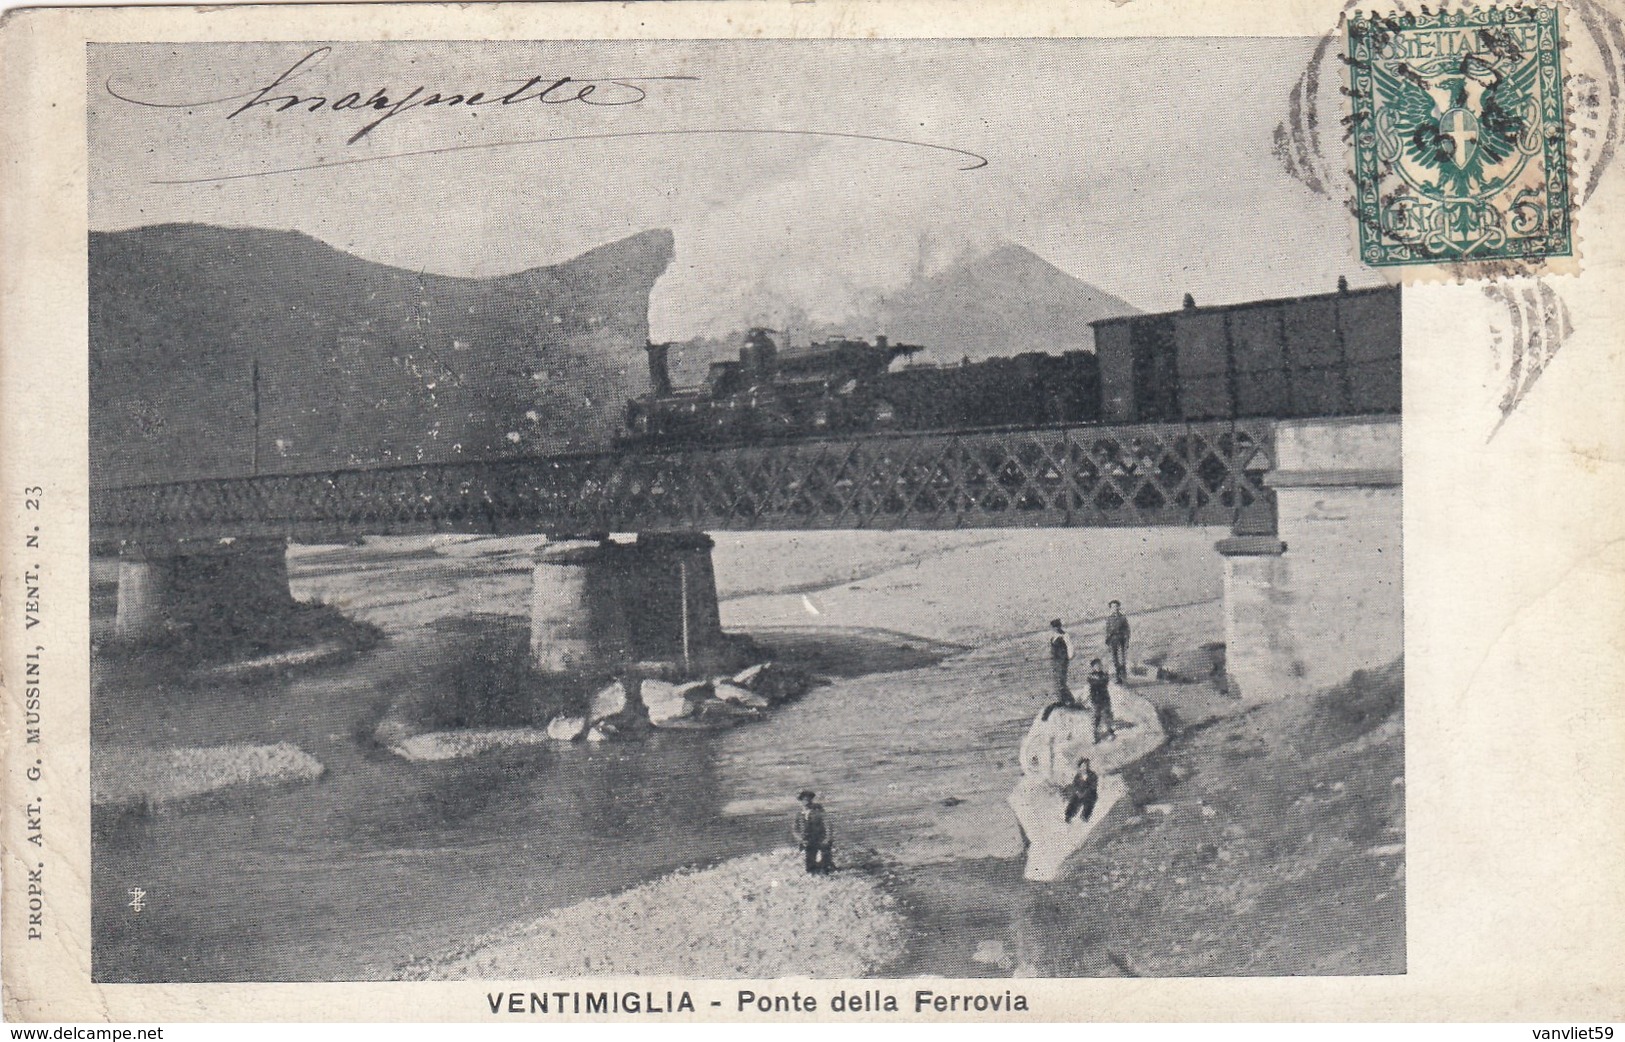 VENTIMIGLIA-IMPERIA-PONTE SULLA FERROVIA-PASSAGGI TRENO FUMANTE-VEDUTA INSOLITA-CARTOLINA VIAGGIATA IL 1-3-1904 - Imperia